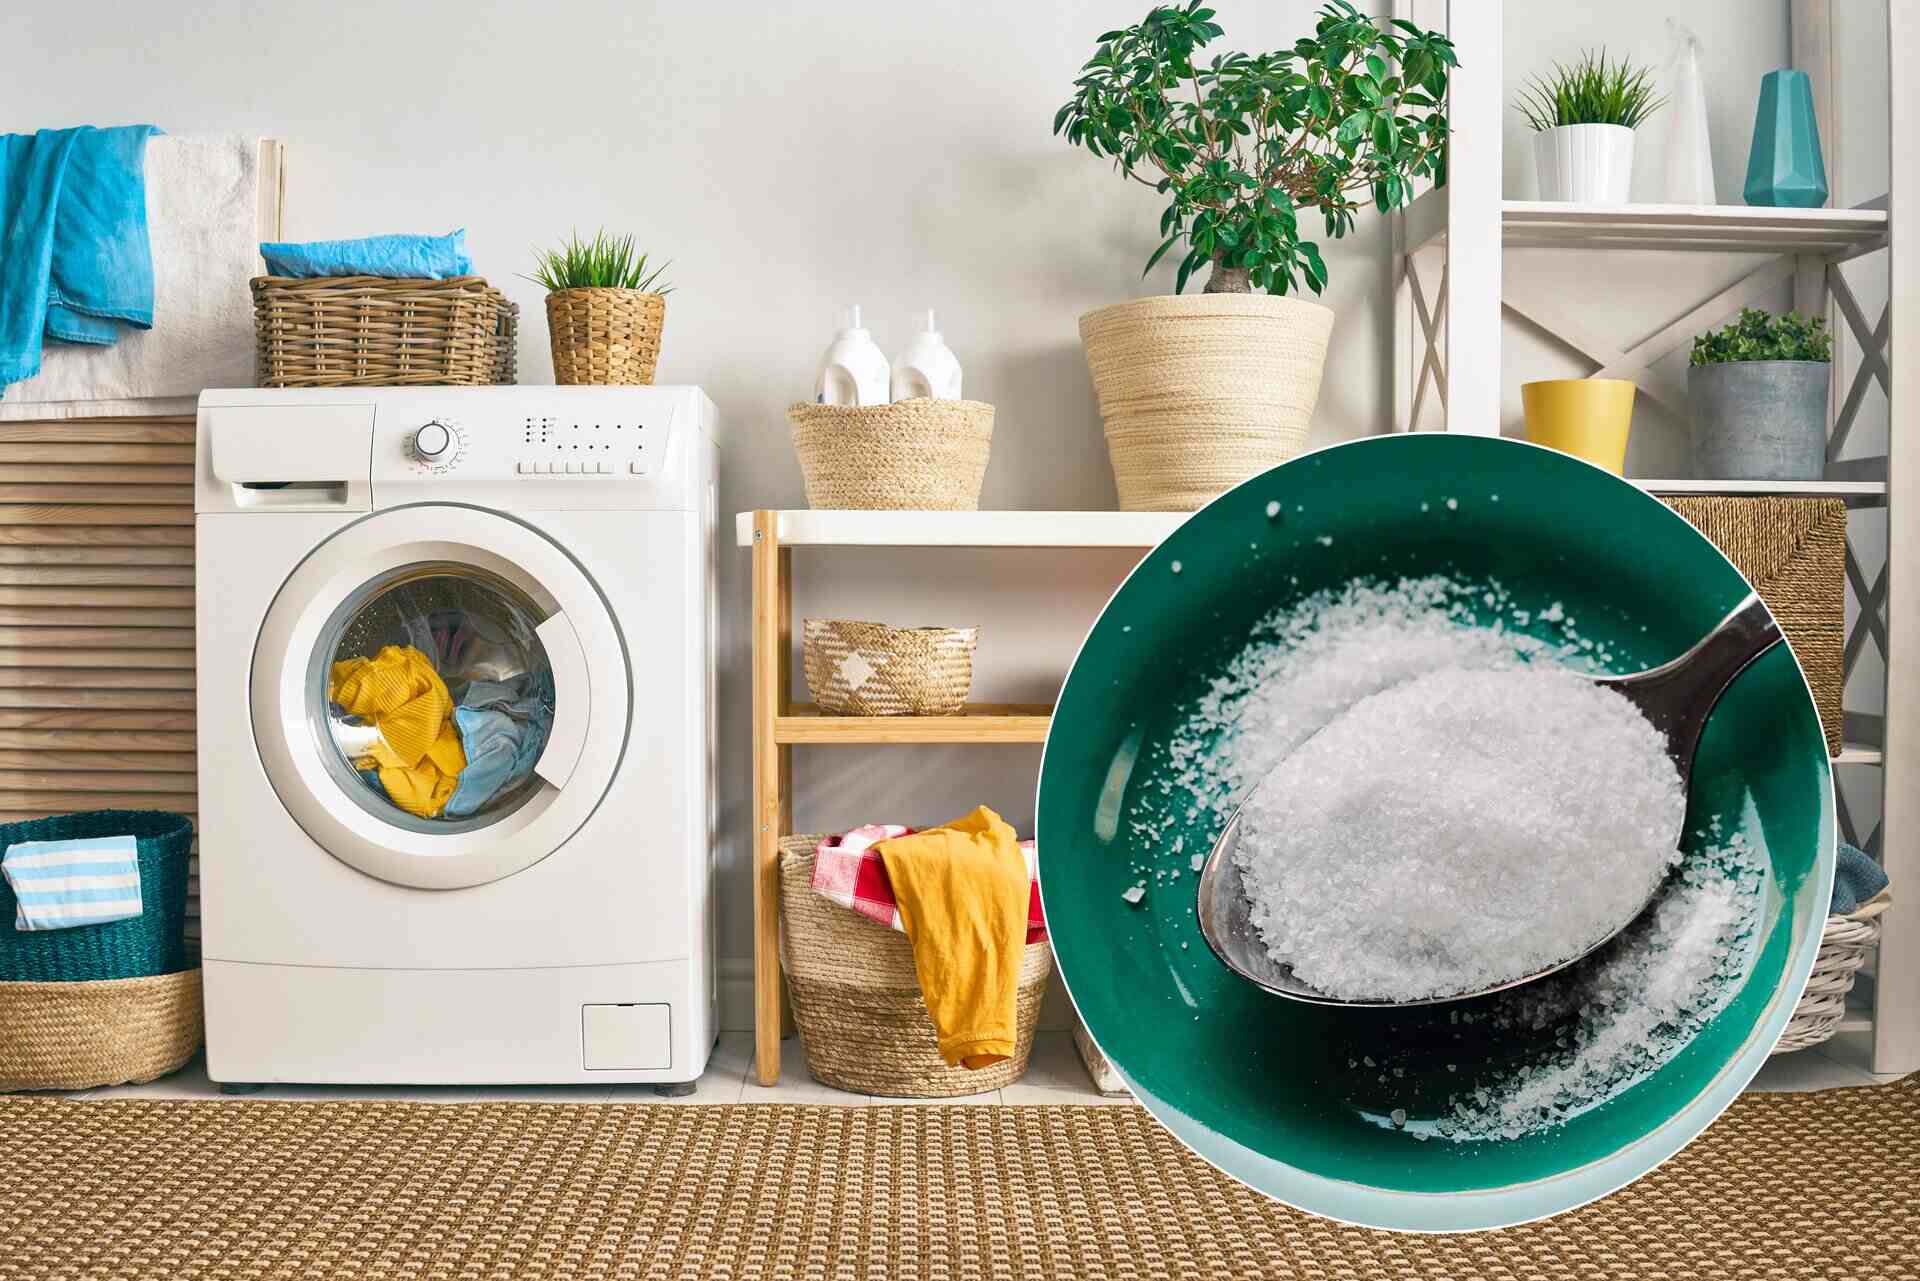 Wsyp cukier do pralki z dziecięcymi ubrankami. Efekt cię zaskoczy